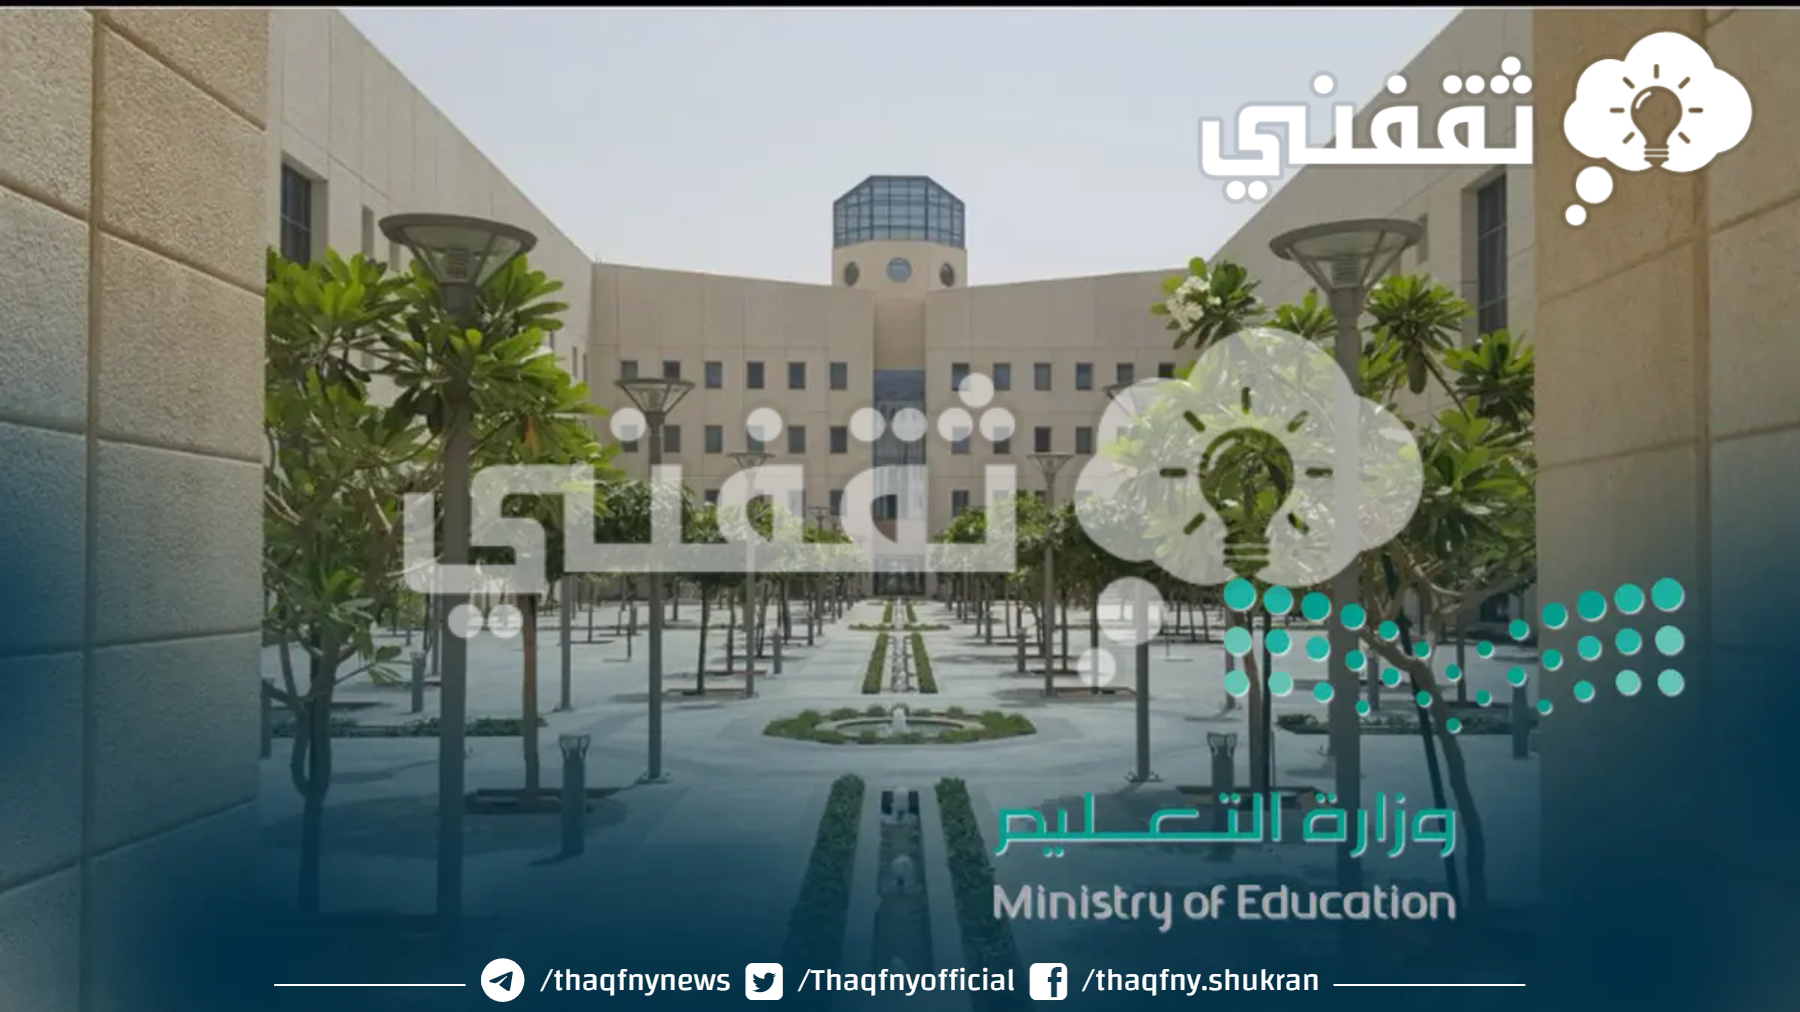 وزارة التعليم السعودي الآن إيقاف الدراسة الحضورية خلال أيام من الخميس حتى الاثنين بكافة المناطق